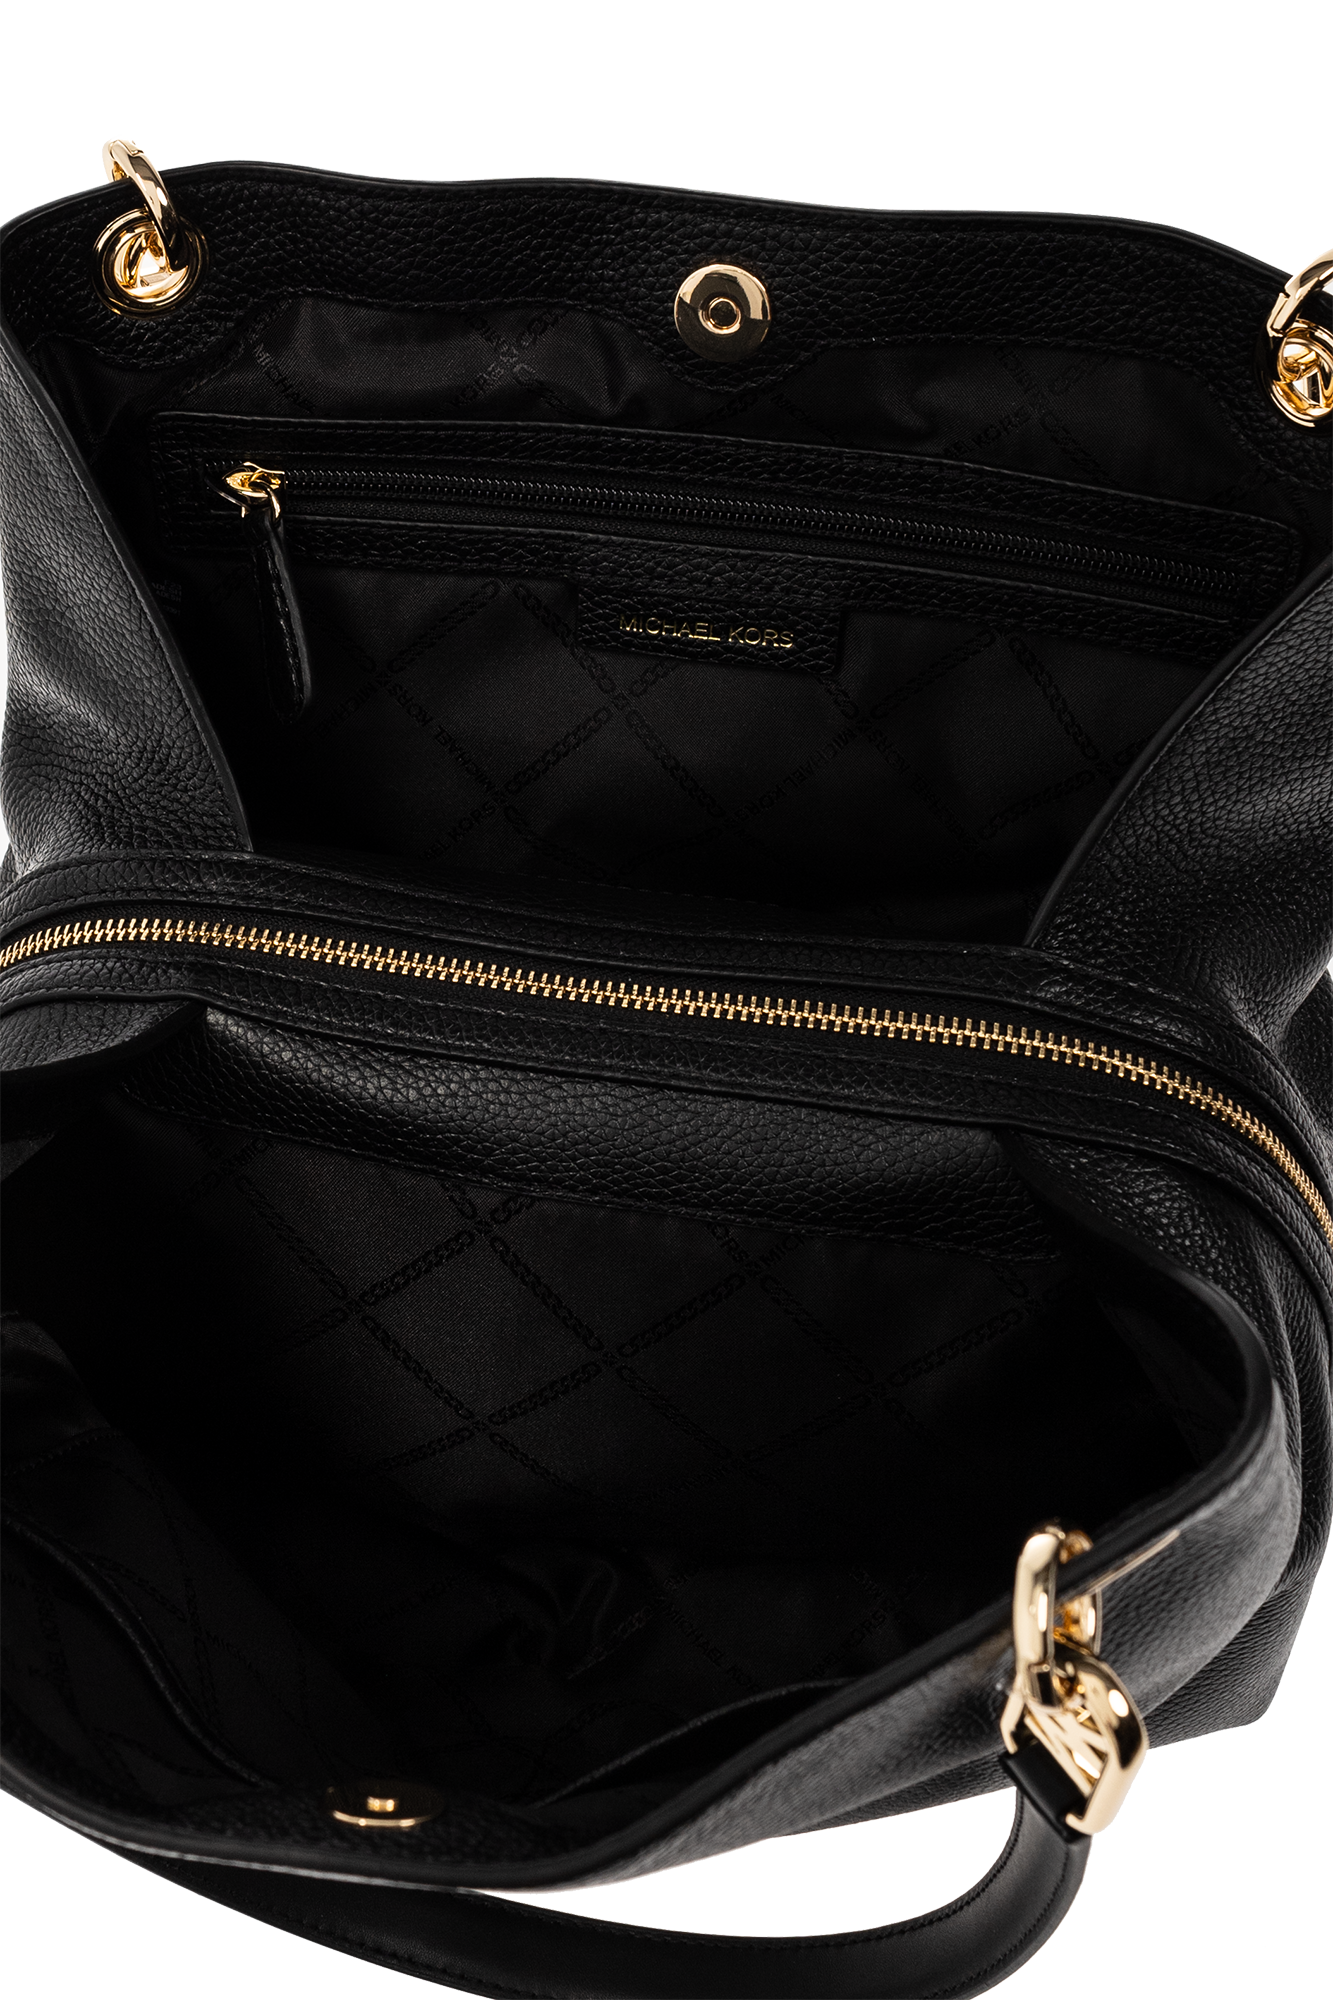 MICHAEL KORS: shoulder bag for woman - Black  Michael Kors shoulder bag  30F3G8KT7L online at